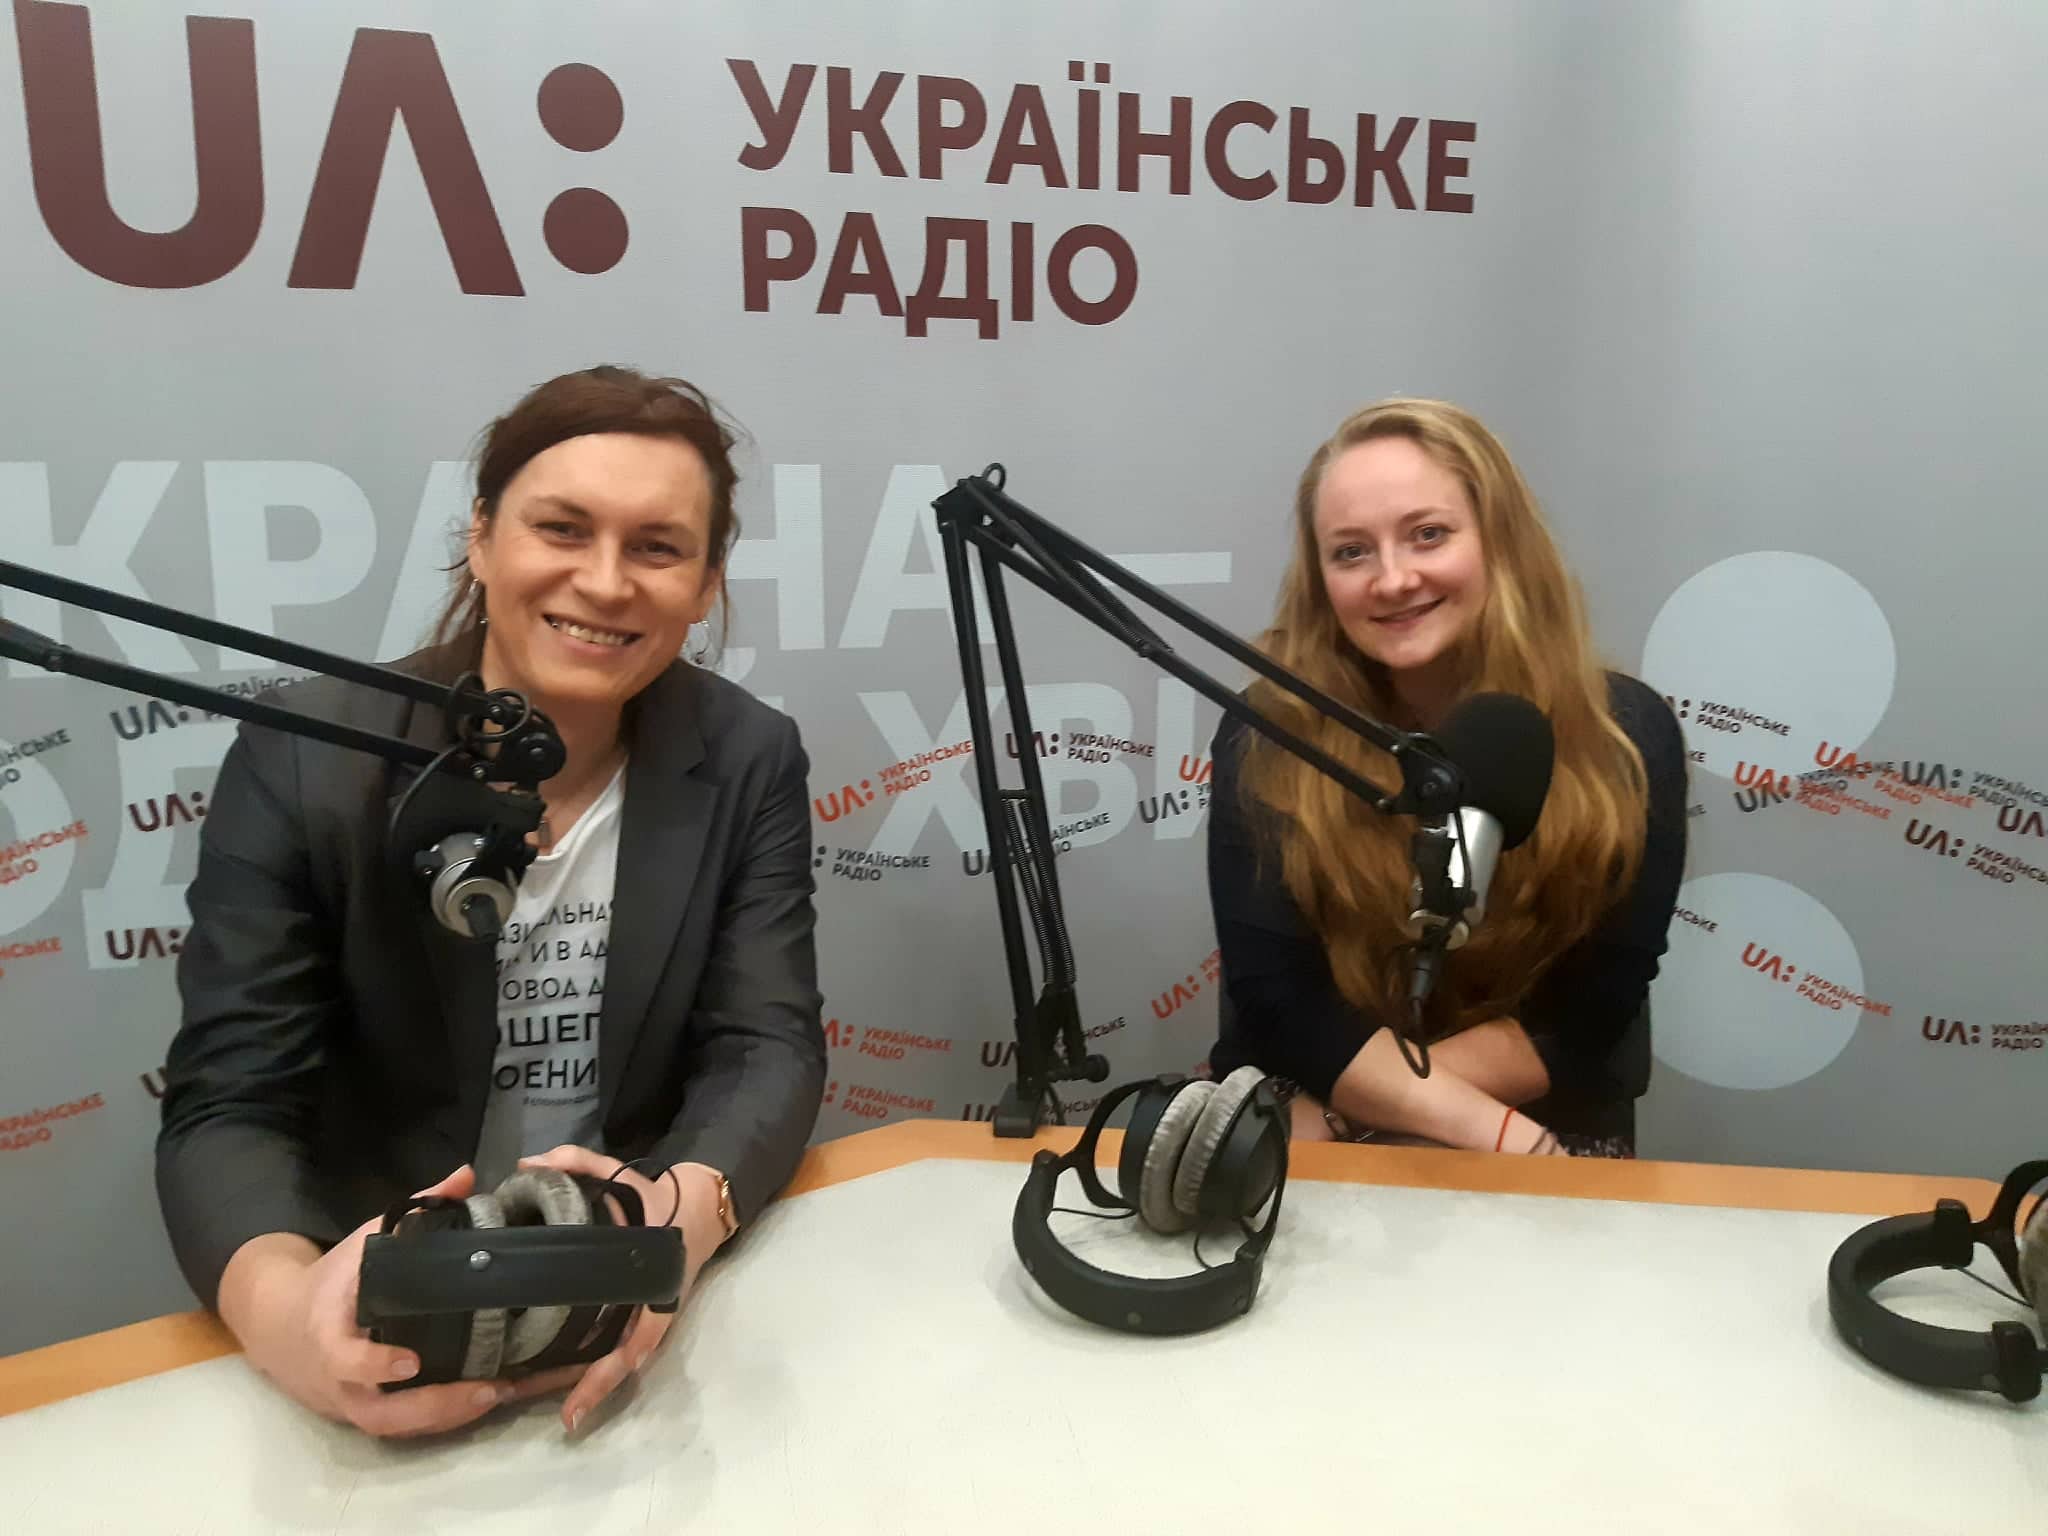 Історії жінок, які пережили домашнє насильство: як медіа долучаються до кампанії ООН в Україні